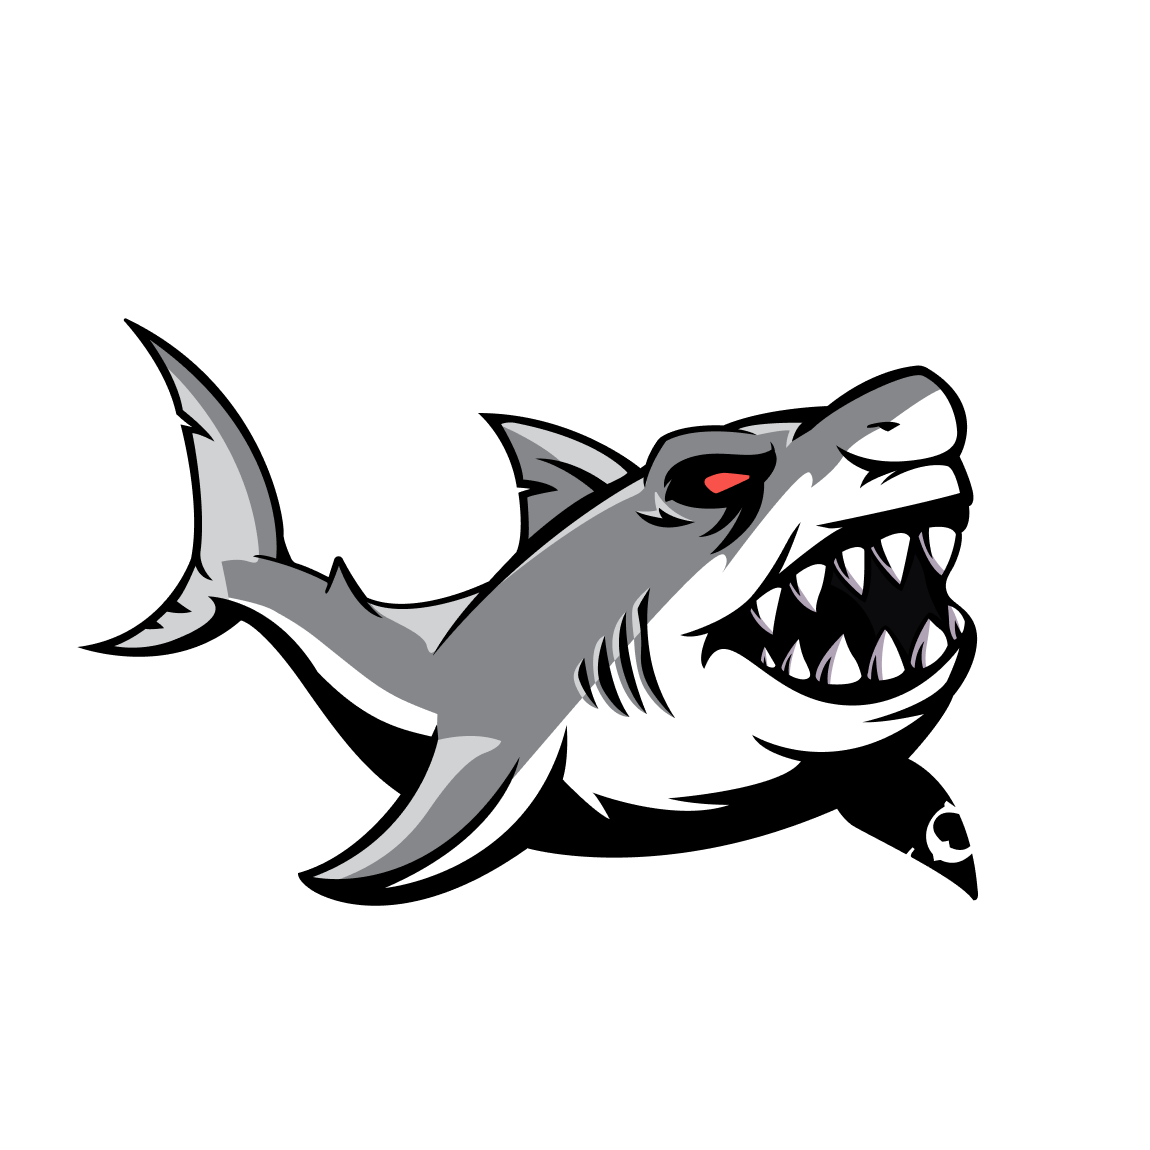 The Shark Club Logo